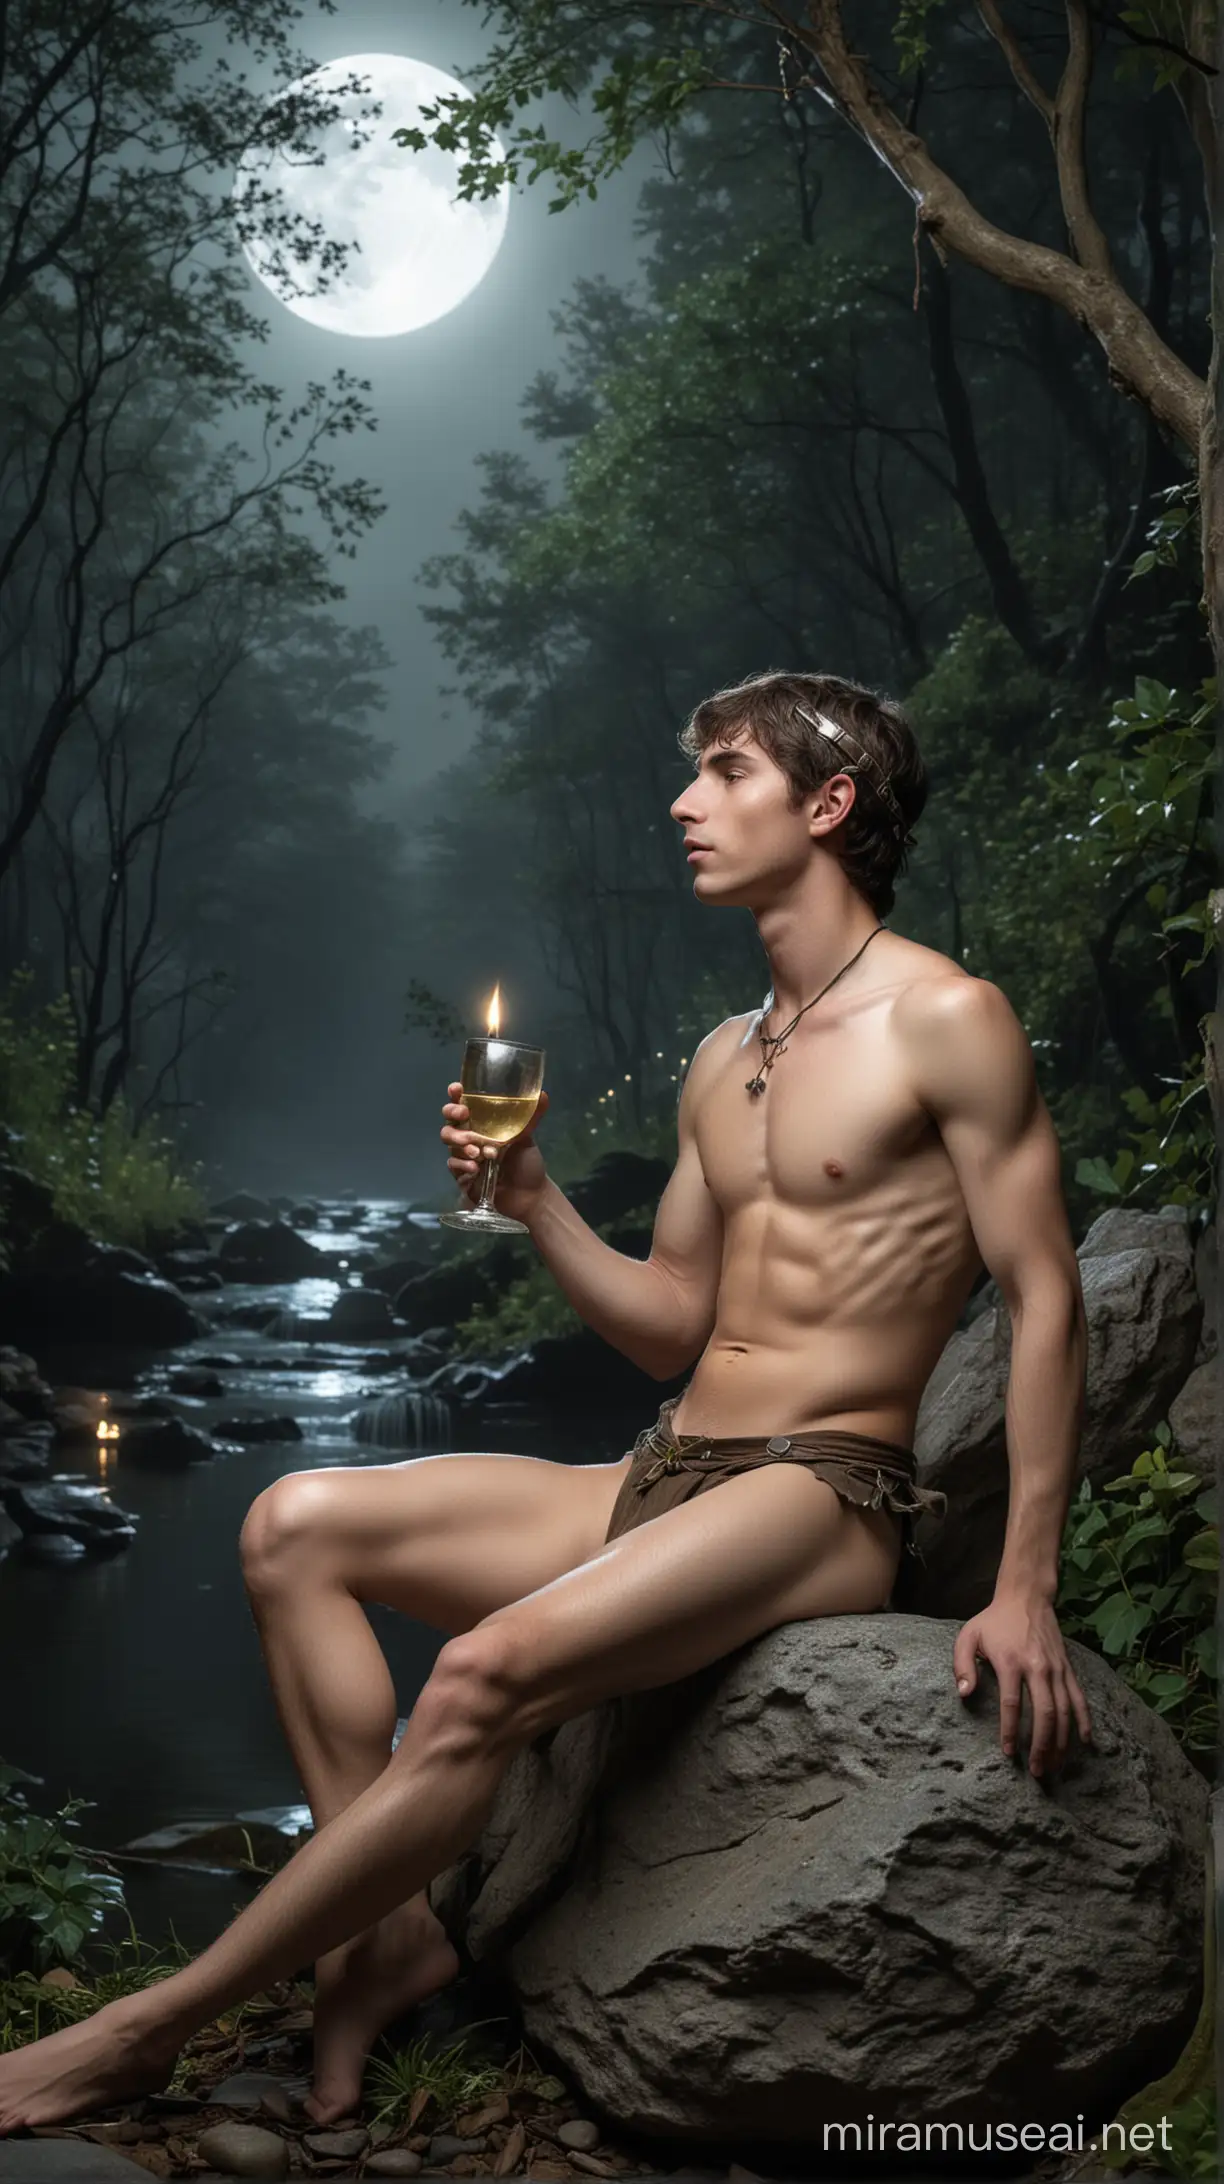 Duende masculinode 18 anos sentado em uma pedra, com um copo na mão, nu, sob a luz da lua, em uma floresta encantada, cercado de elfos tocando flautas.